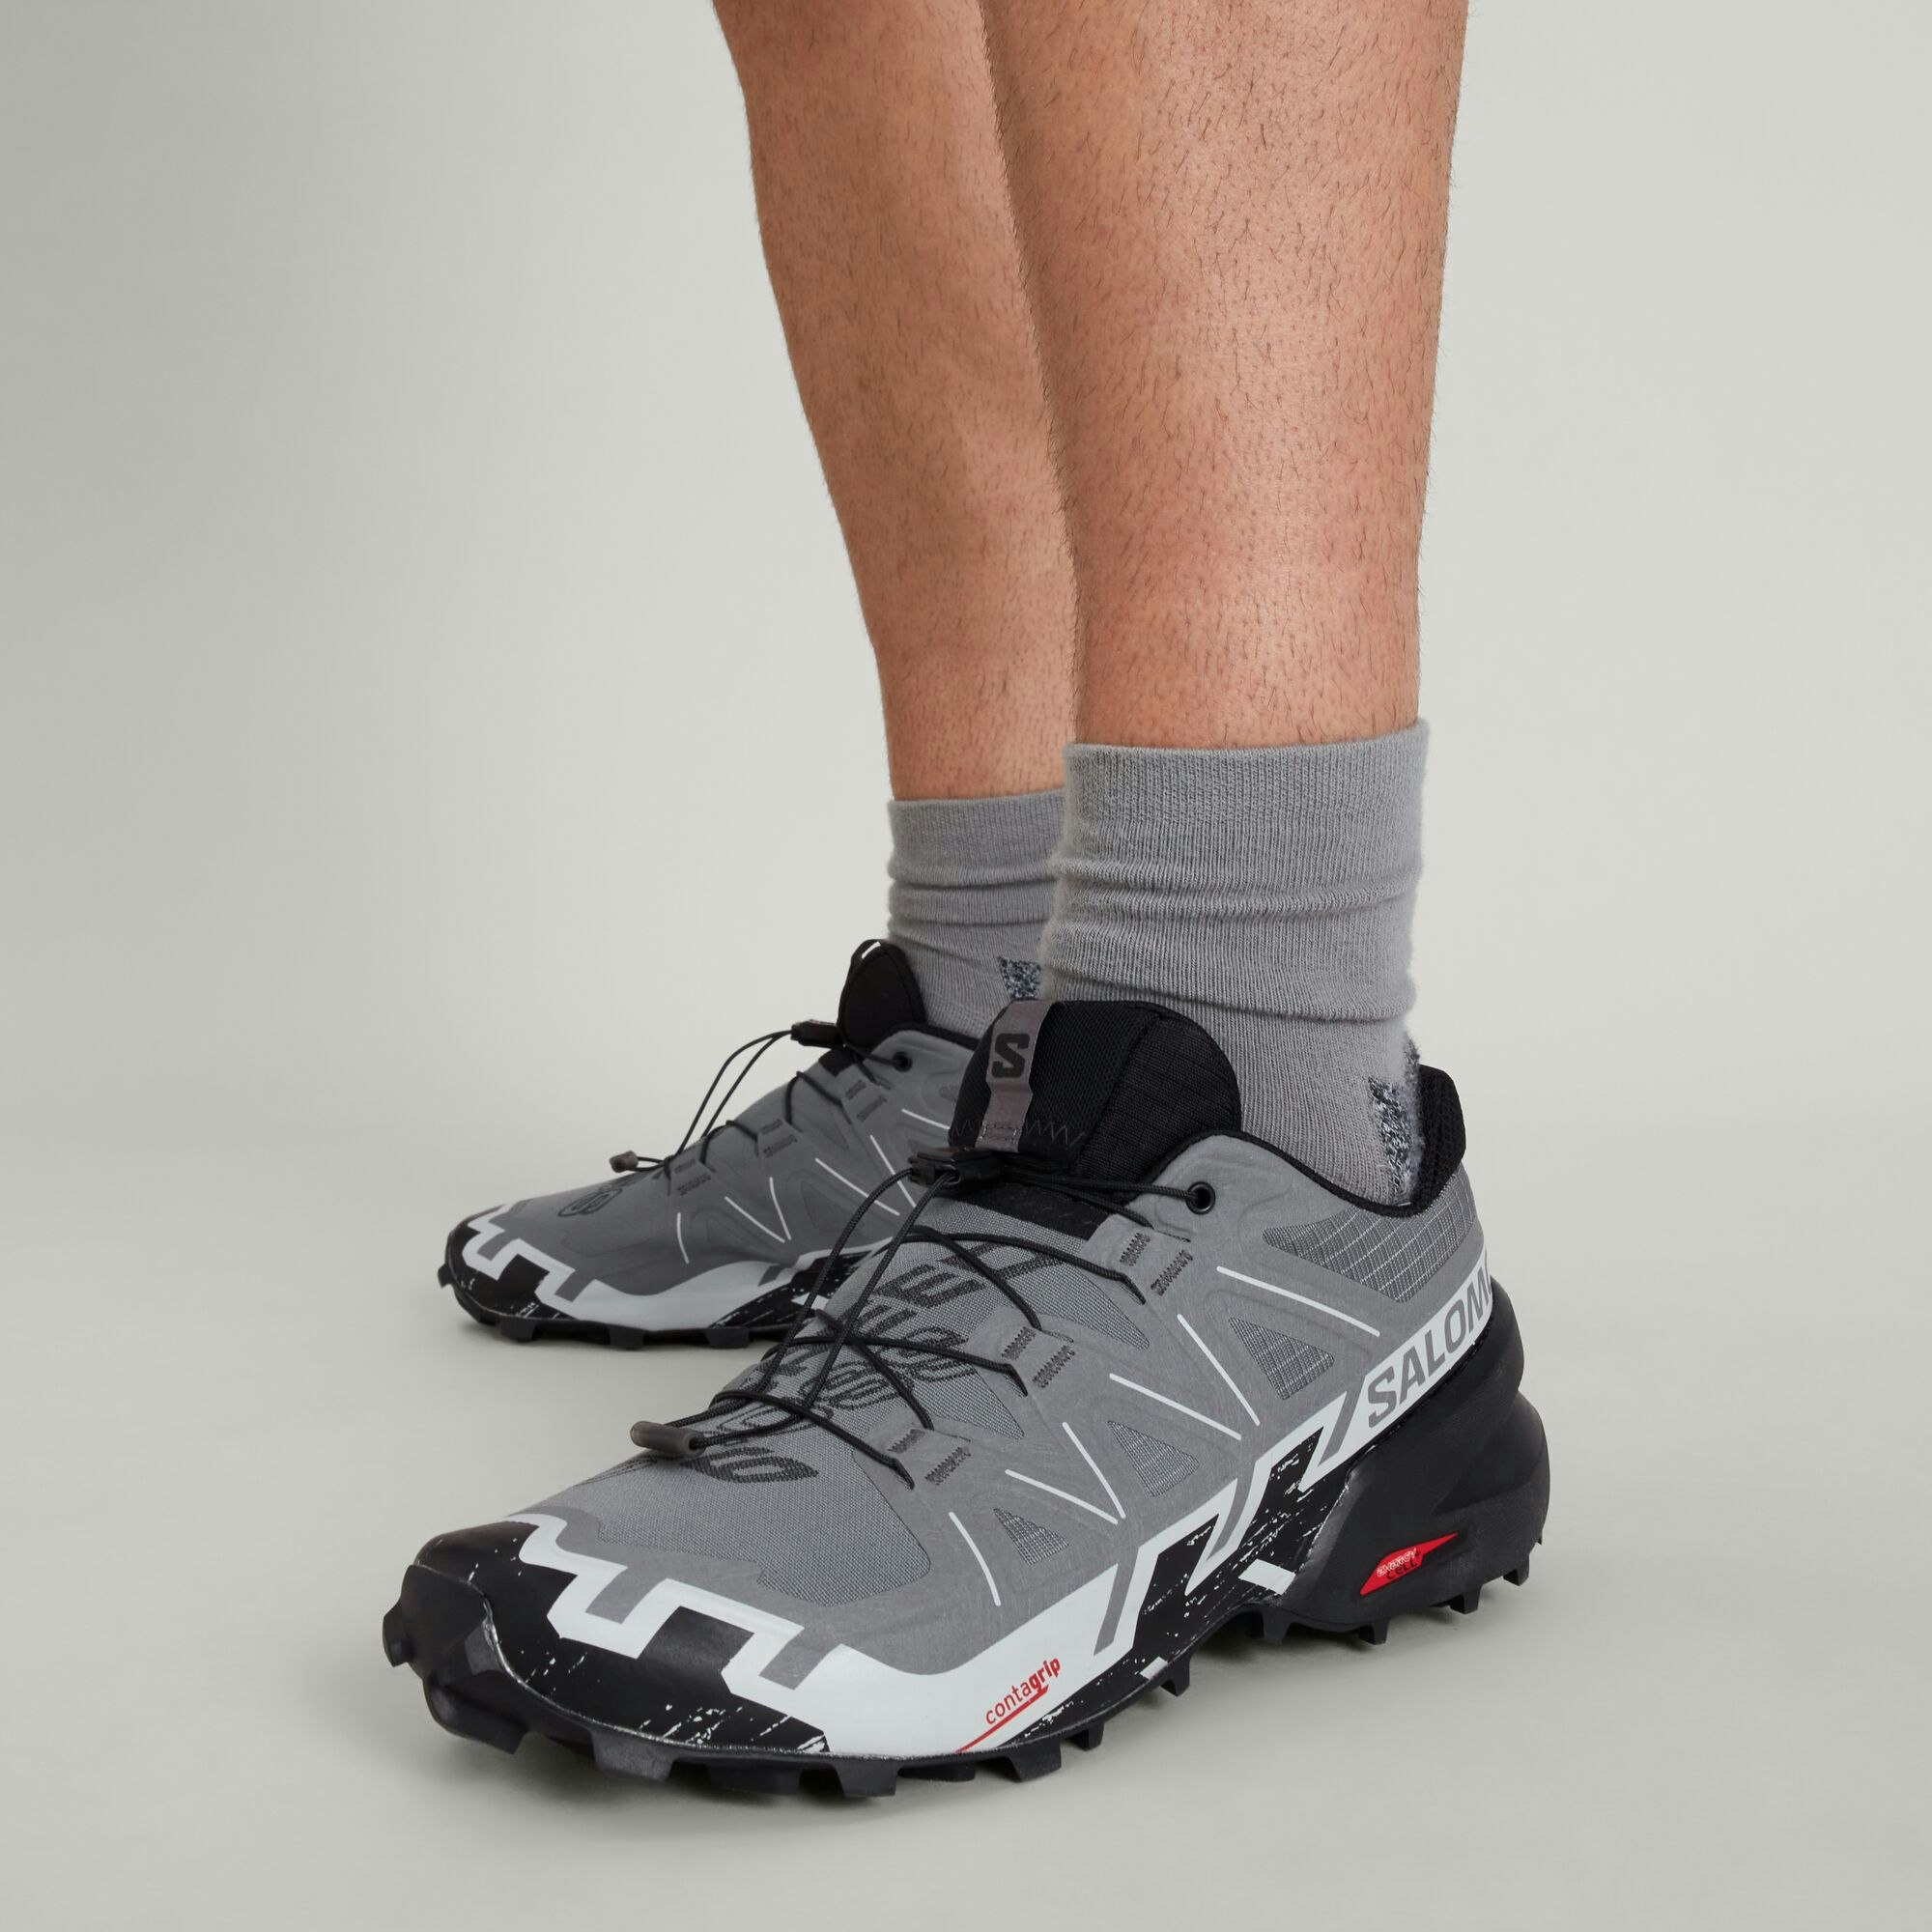  Salomon Men's SPEEDCROSS Trail Running Shoes for Men, Black /  Black / Phantom, 7